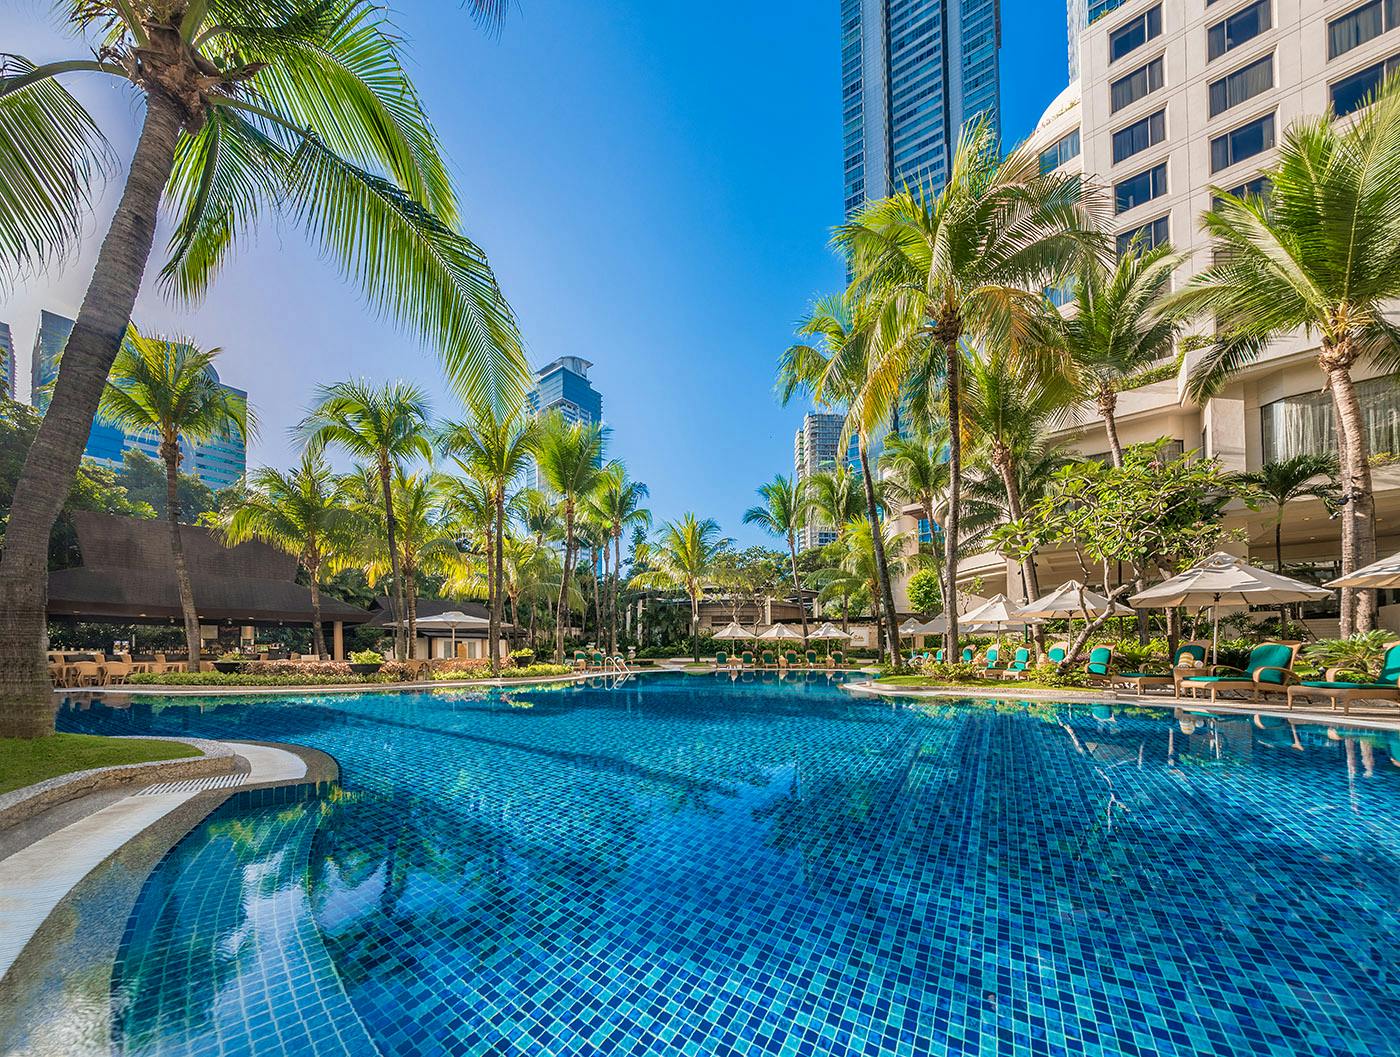 Pool area of EDSA Shangri-La Hotel